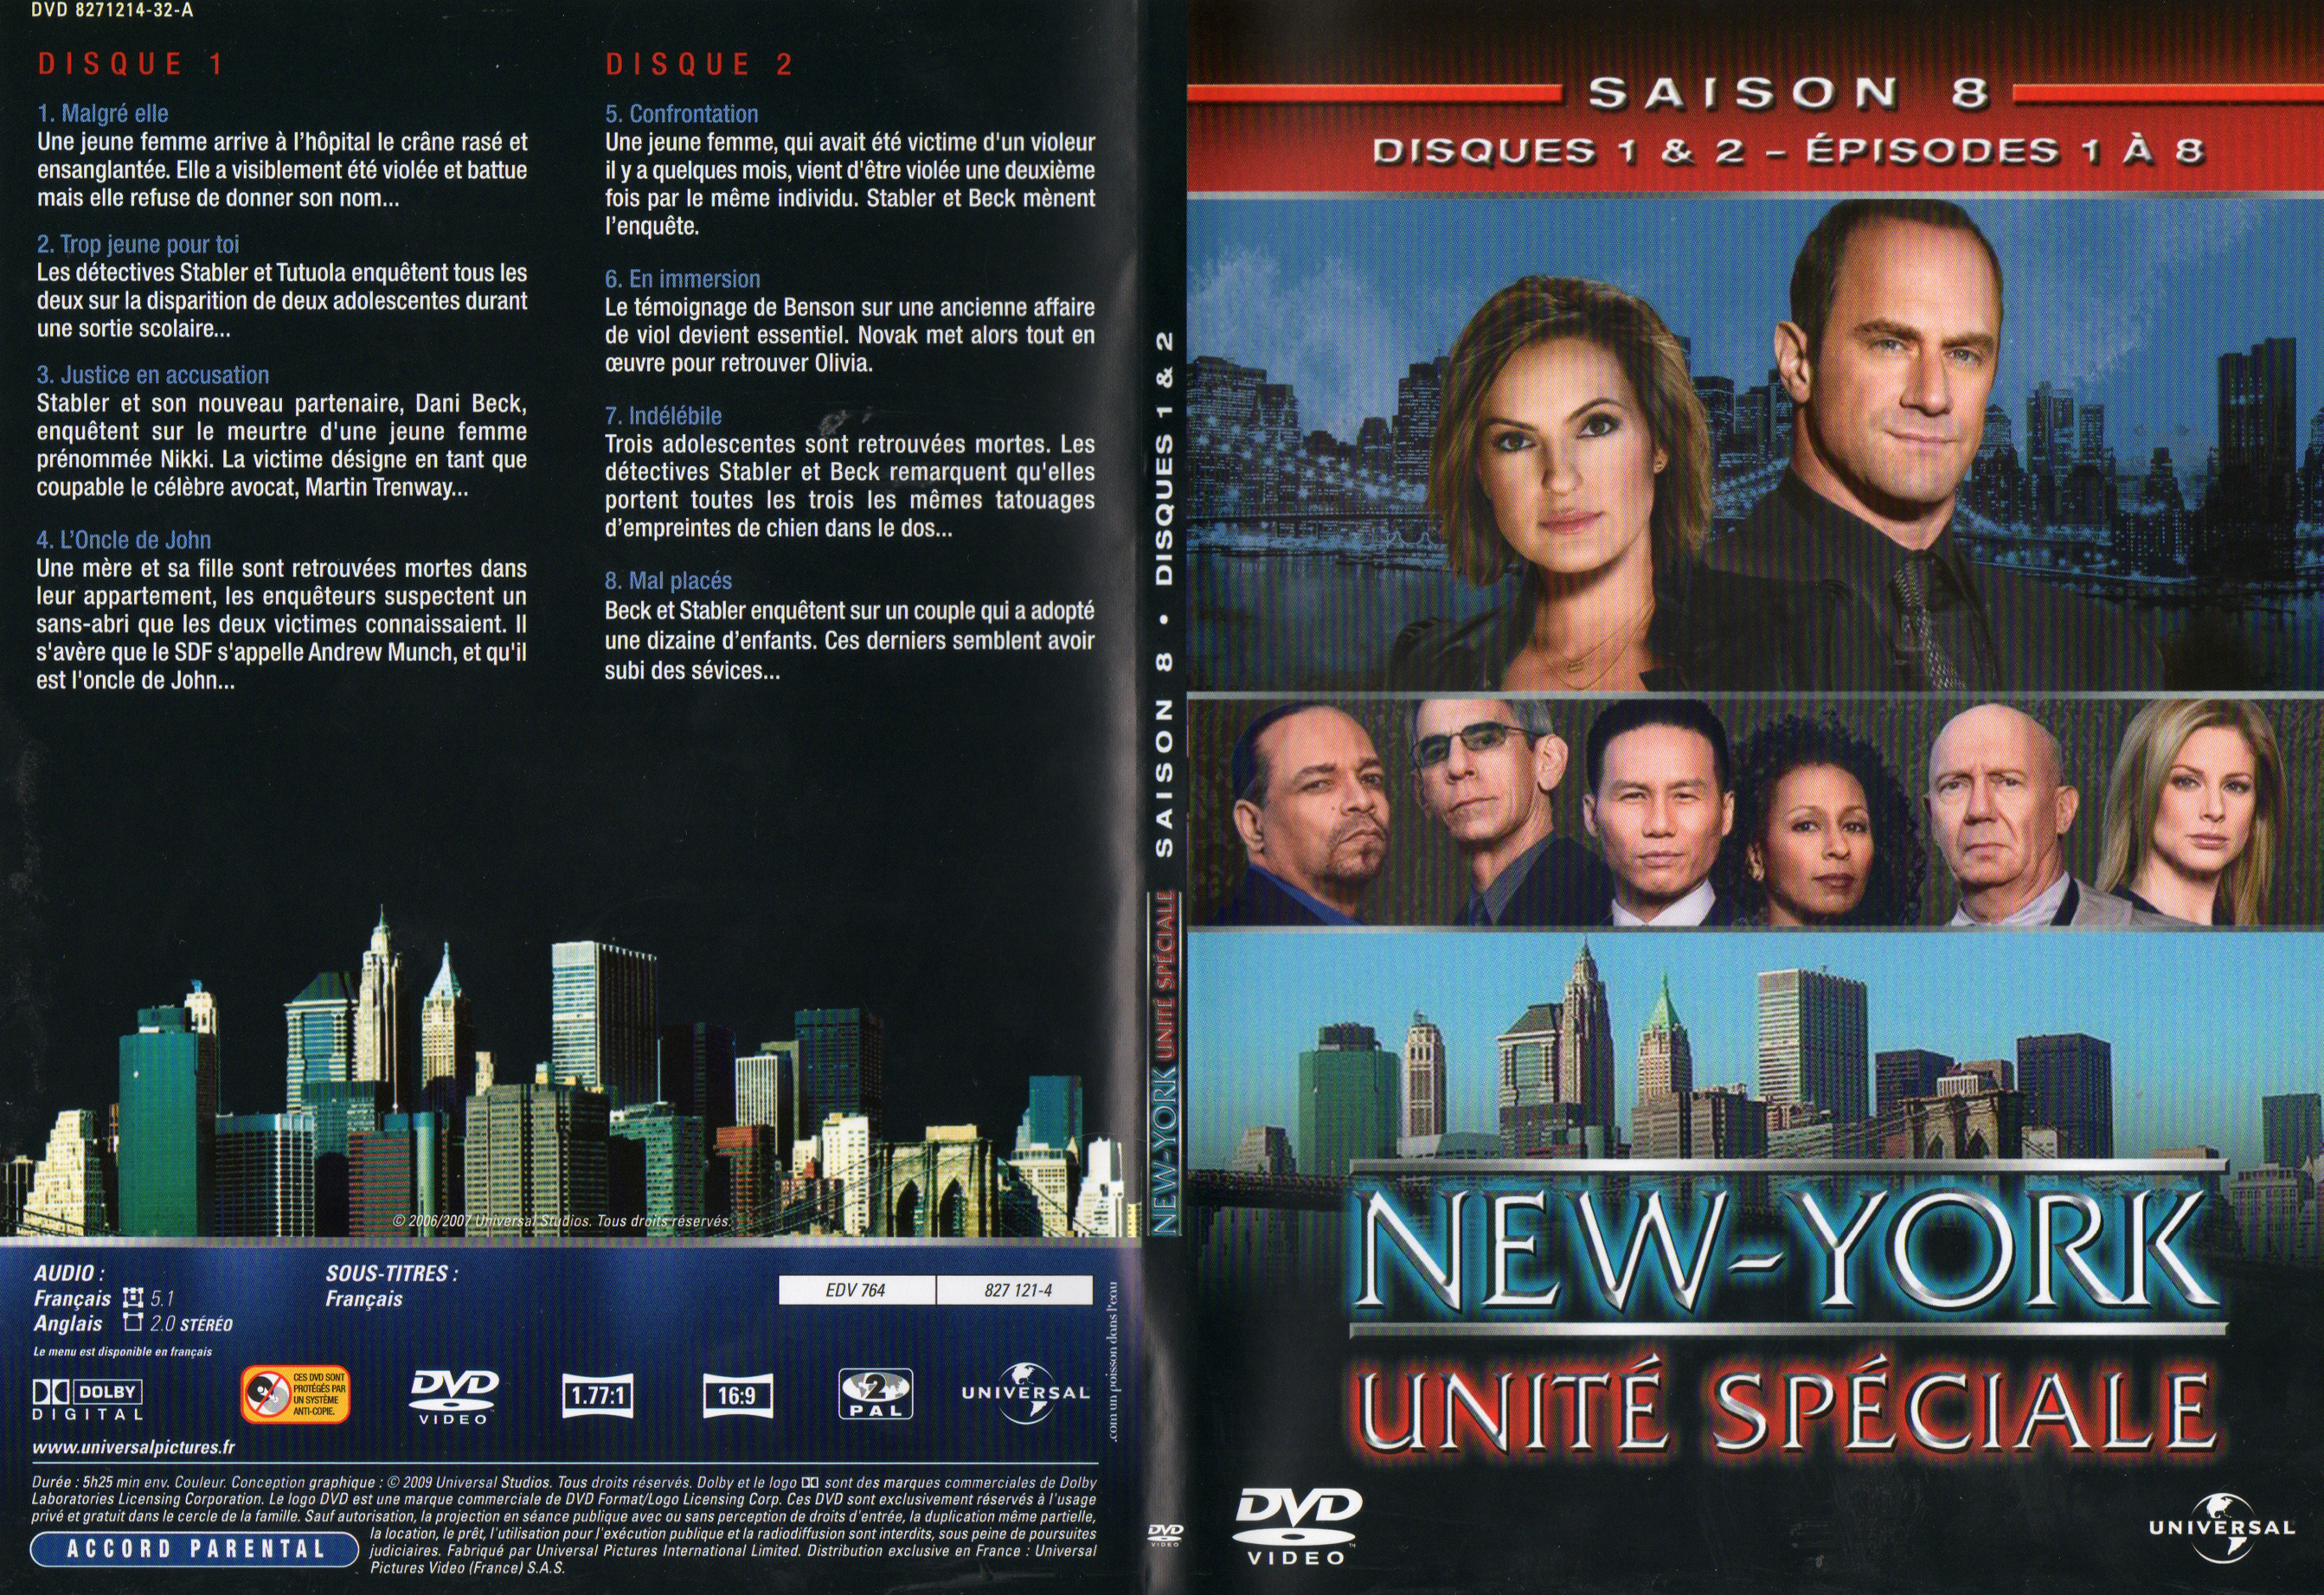 Jaquette DVD New York unit spciale saison 8 DVD 1